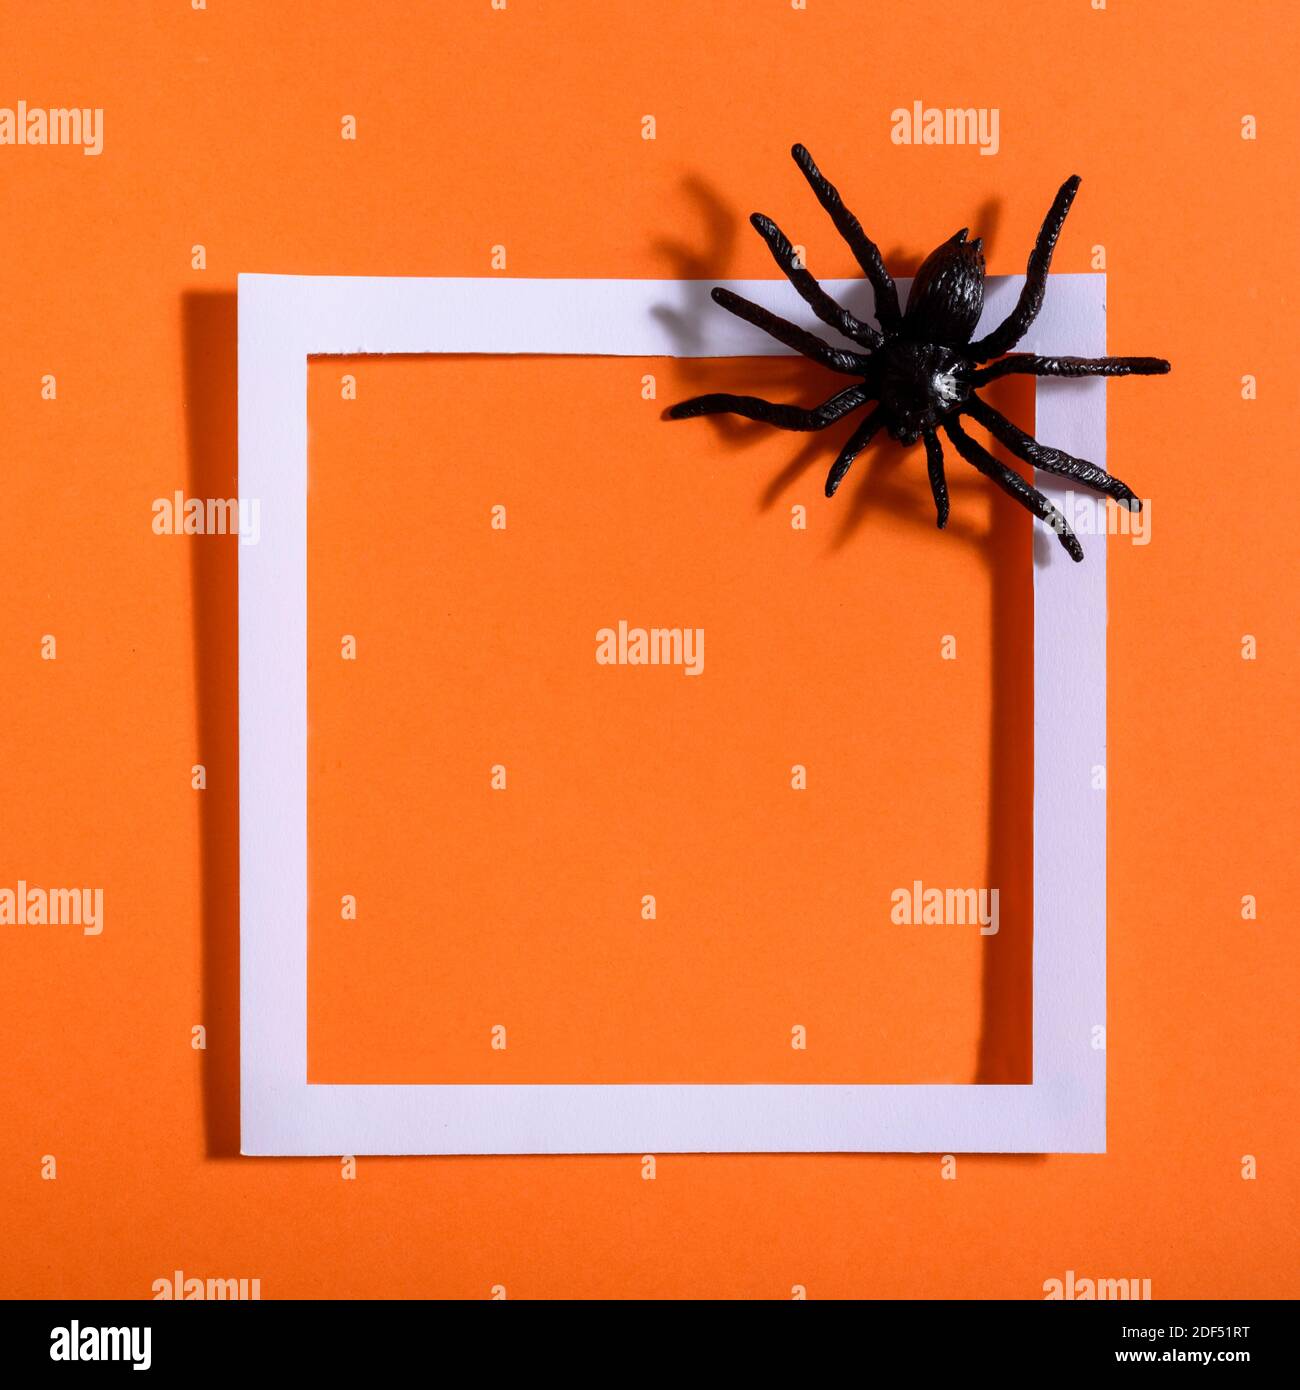 Cadre blanc vide avec araignée noire effrayante sur papier orange. Présentation de l'arrière-plan pour Halloween. Conception de la pose plate minimale. Banque D'Images